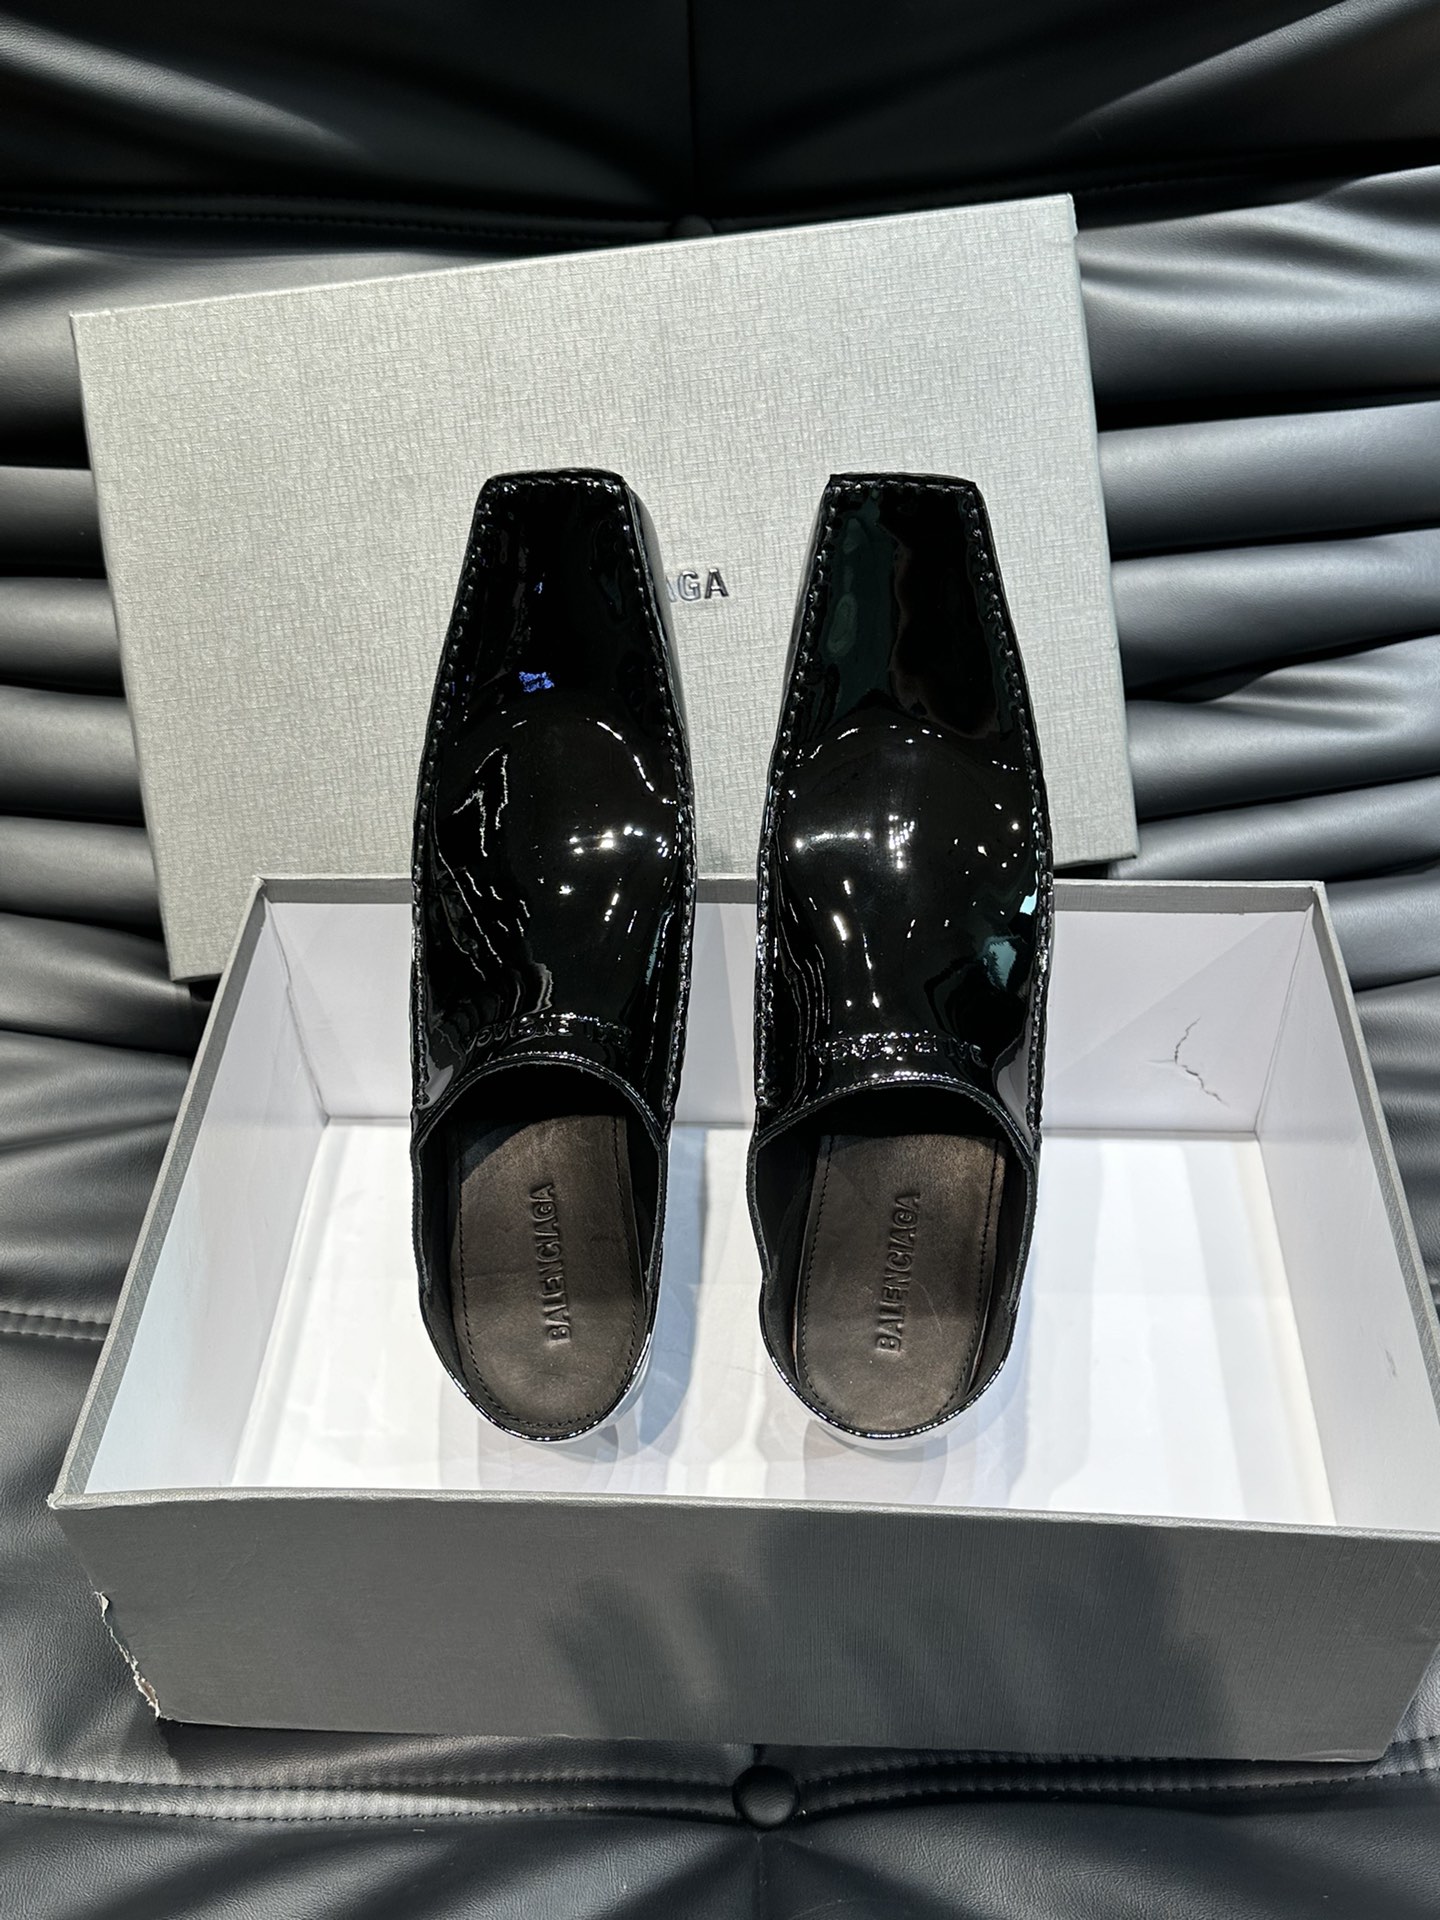 巴黎世家24SS走秀款穆勒情侣款皮鞋超乎正常皮鞋的长度设计真的太酷了非常凹造型的一款皮鞋穿起来非常显腿型